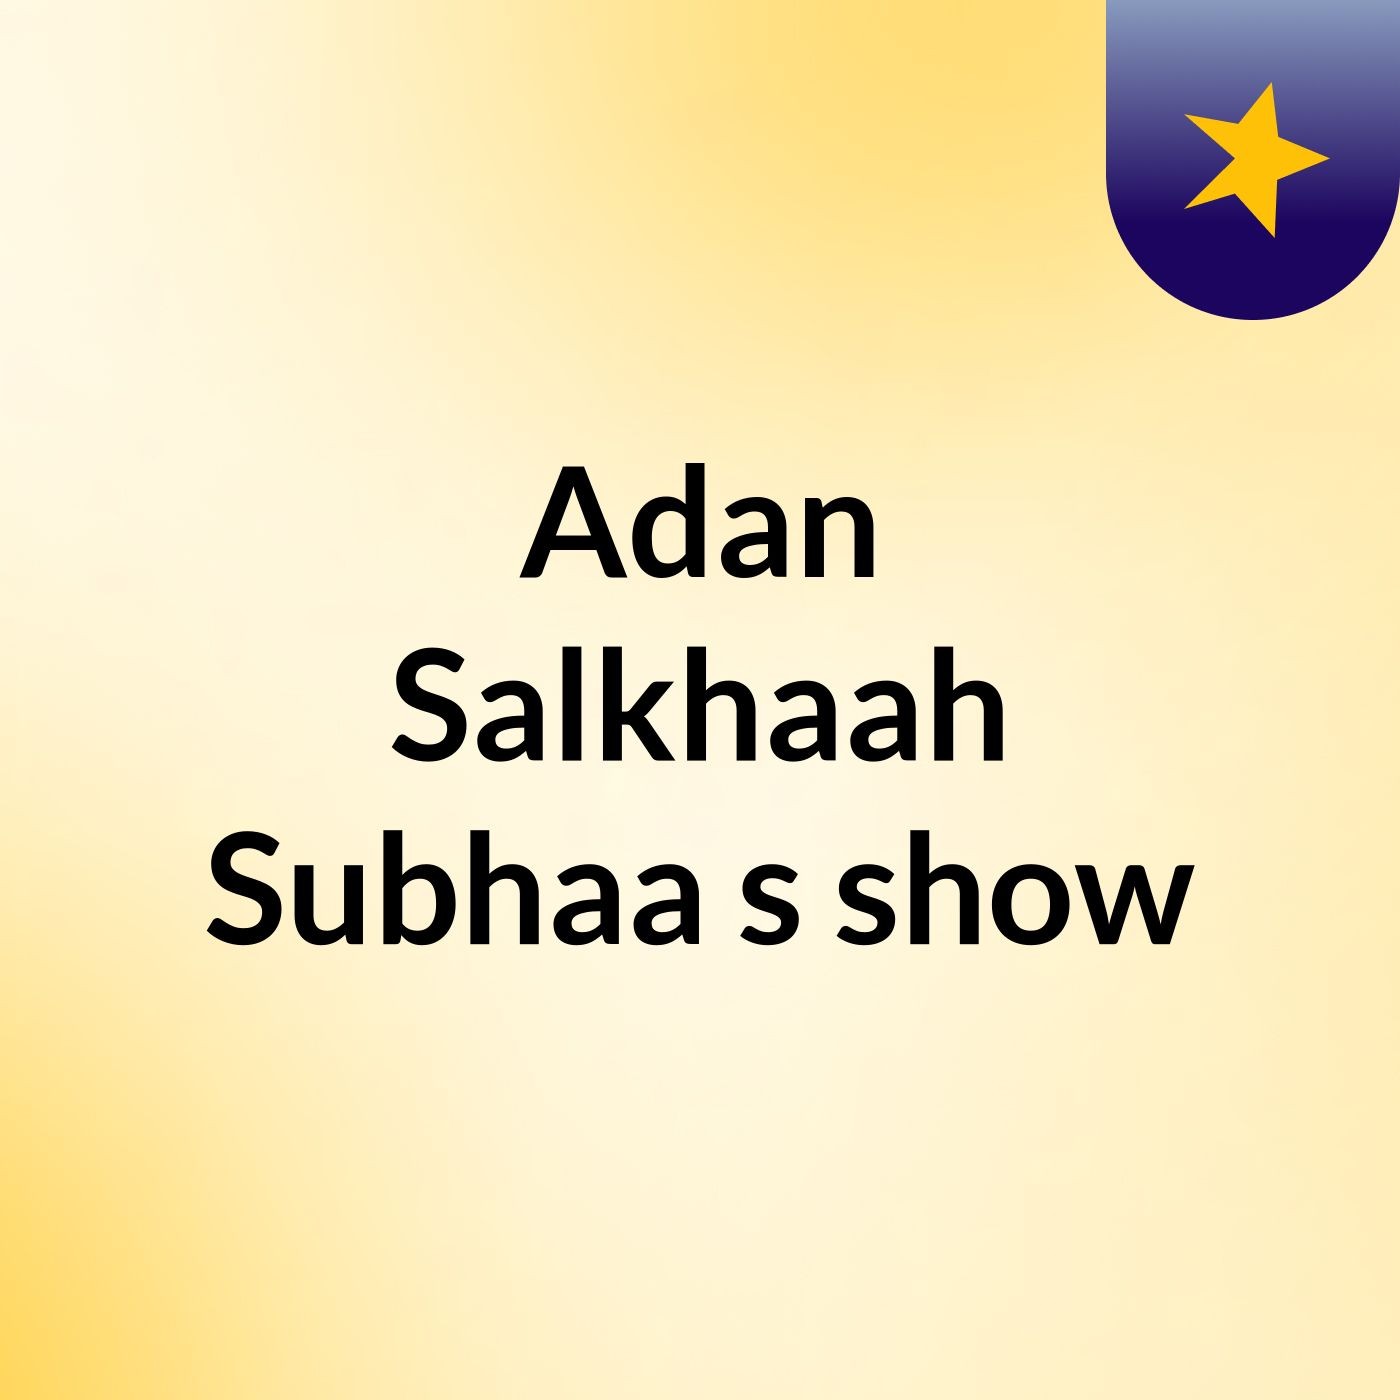 Adan Salkhaah Subhaa's show